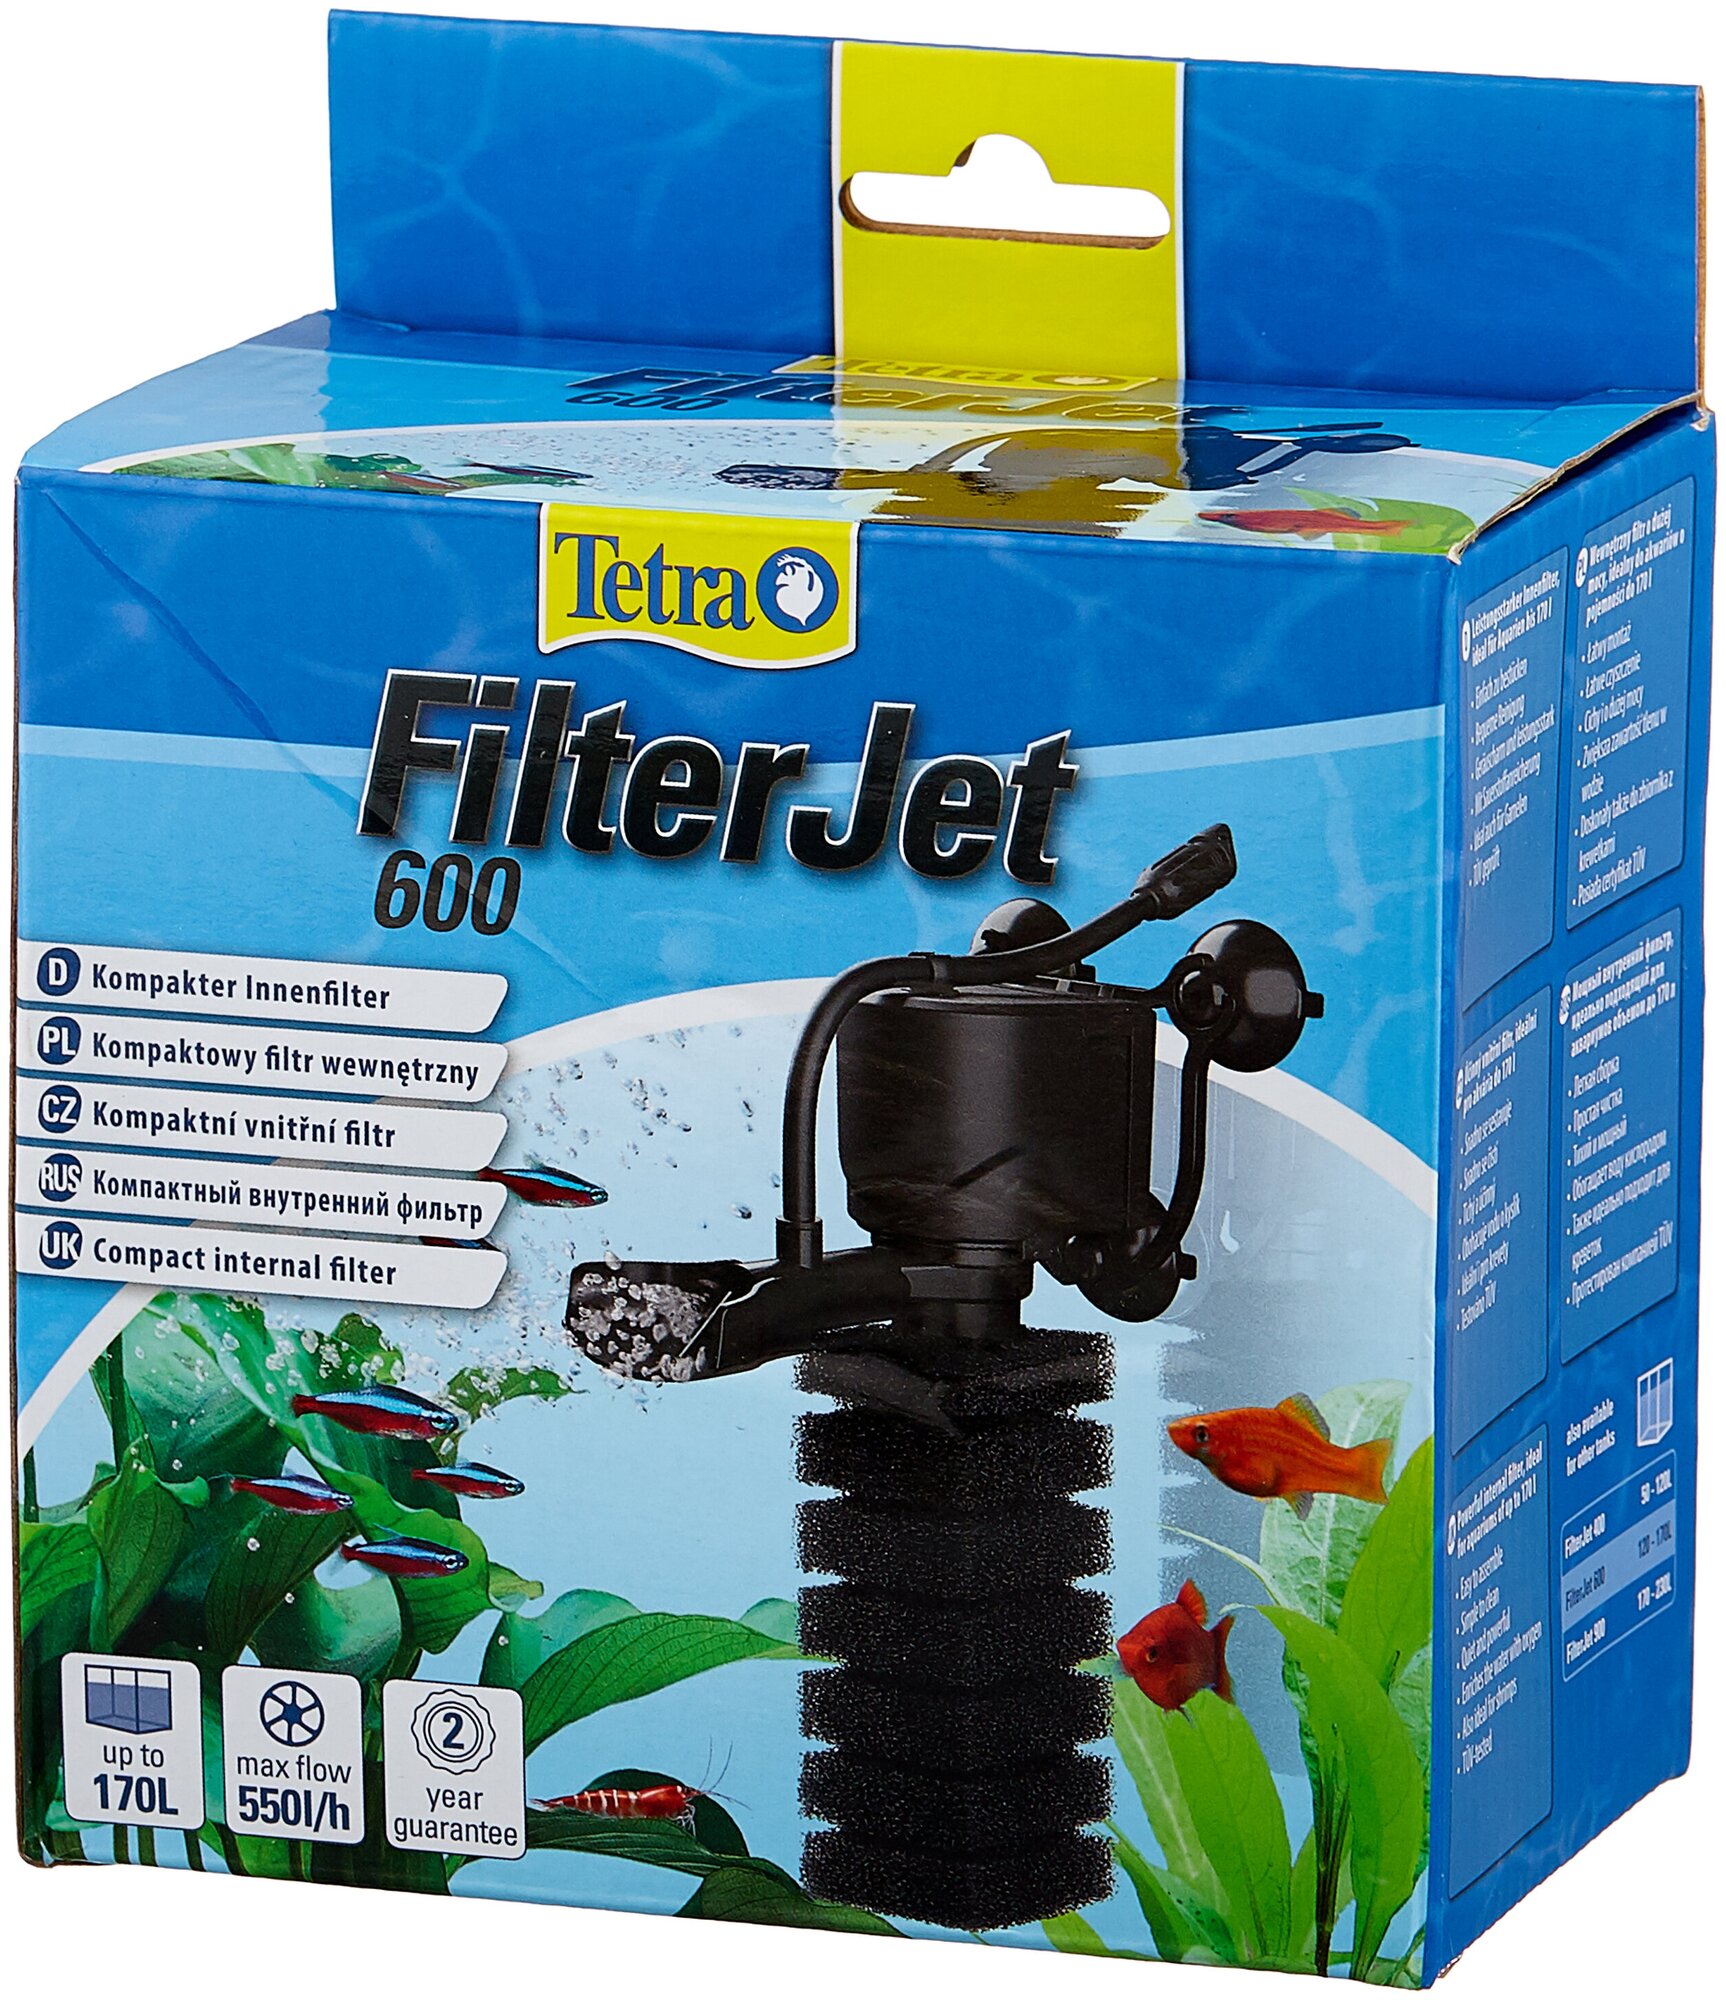 Фильтр внутренний FilterJet 600 компактный для аквариумов 120-170л Tetra FilterJet 600 для аквариумов 120-170л, 550л/ч, 6Вт - фото №4